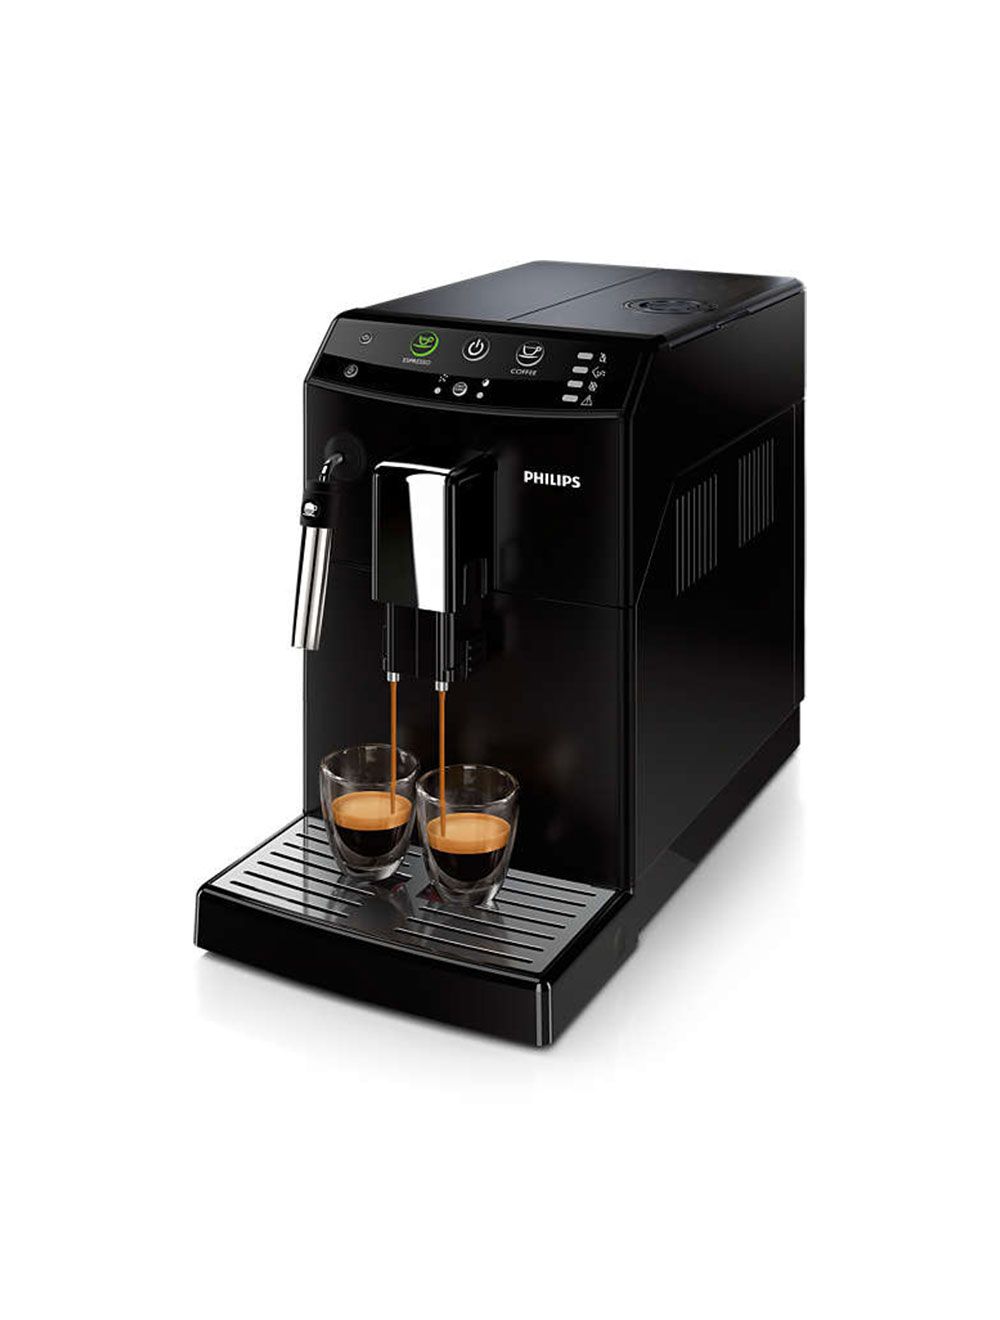 Cette machine à café à grains Philips avec plus de 21.000 avis